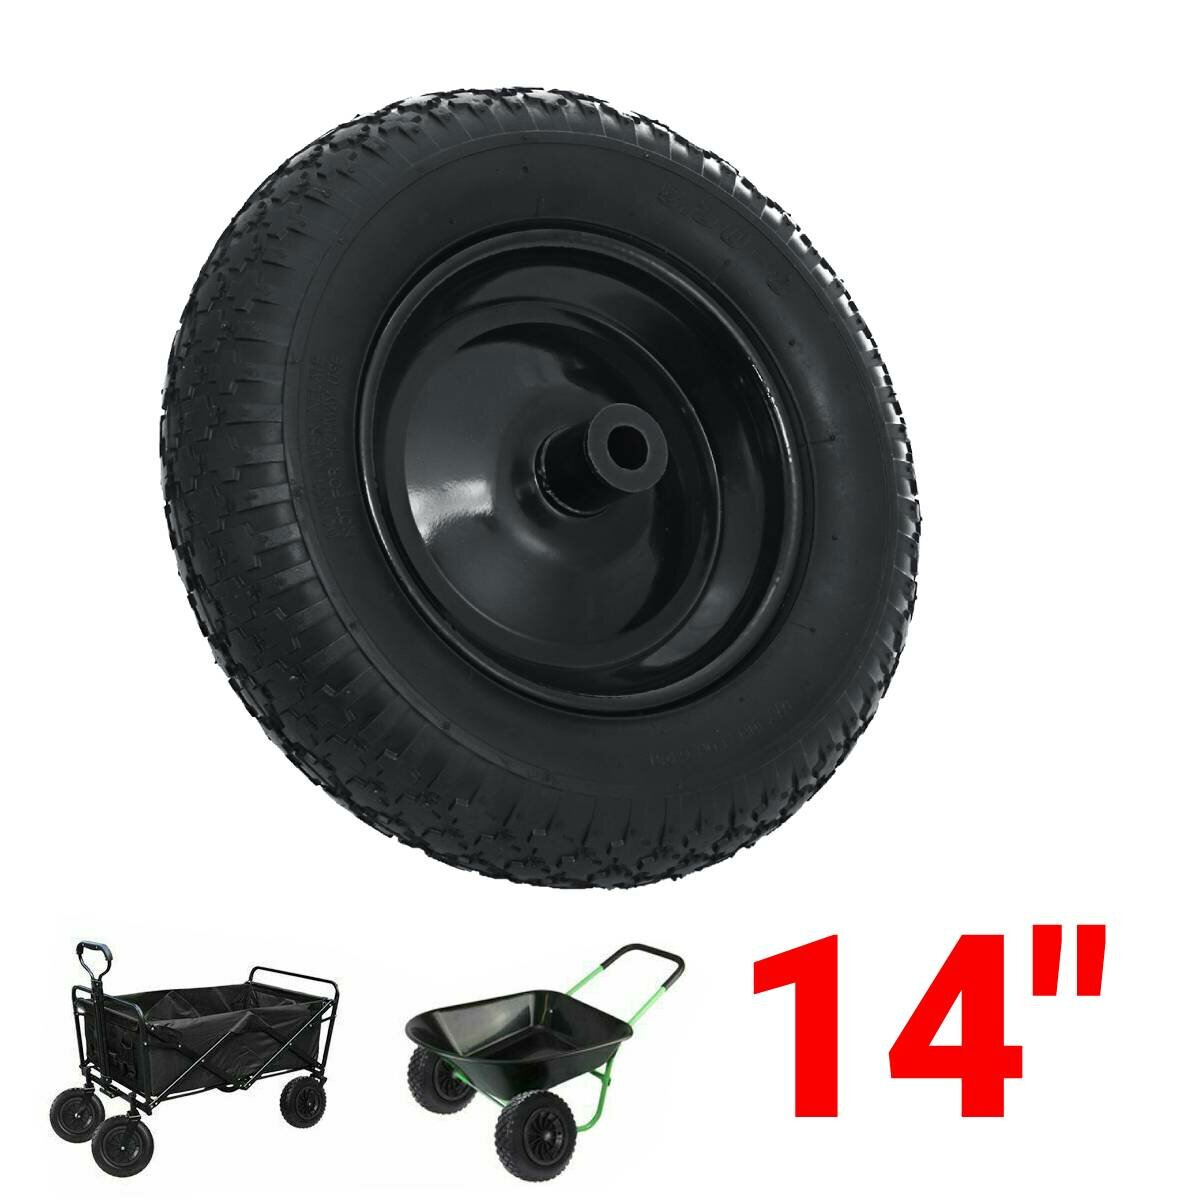 Carrinho de mão de carrinho de mão de pneu pneumático preto de 14 polegadas.